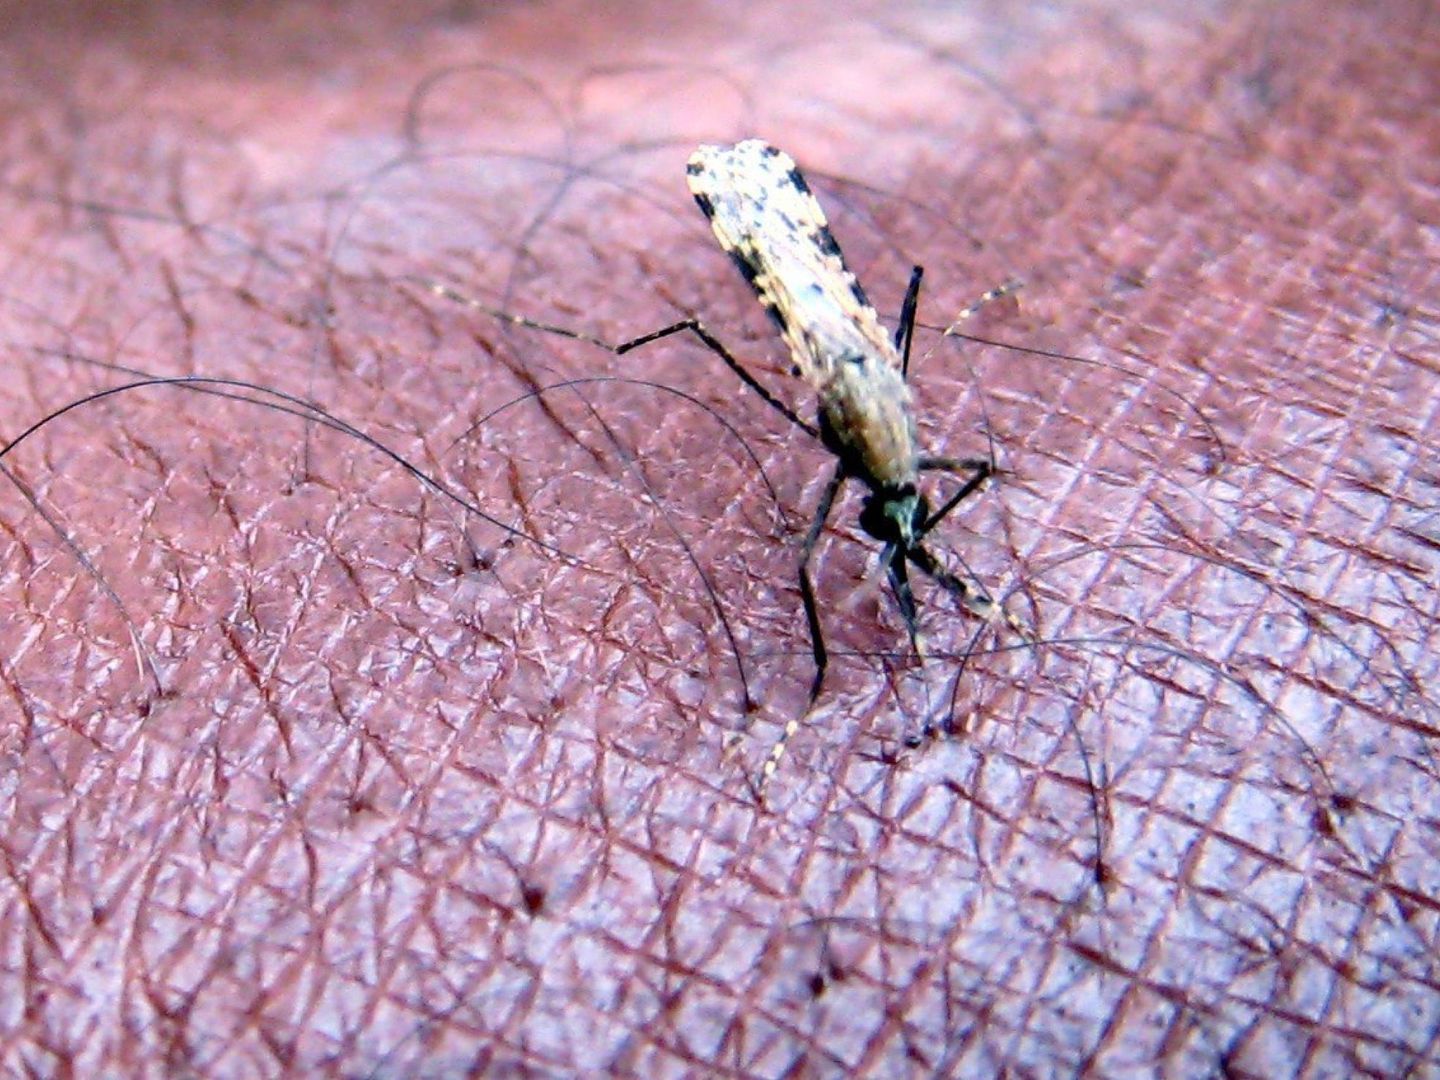 Los mosquitos son uno de los principales vectores de transmisión. EFE